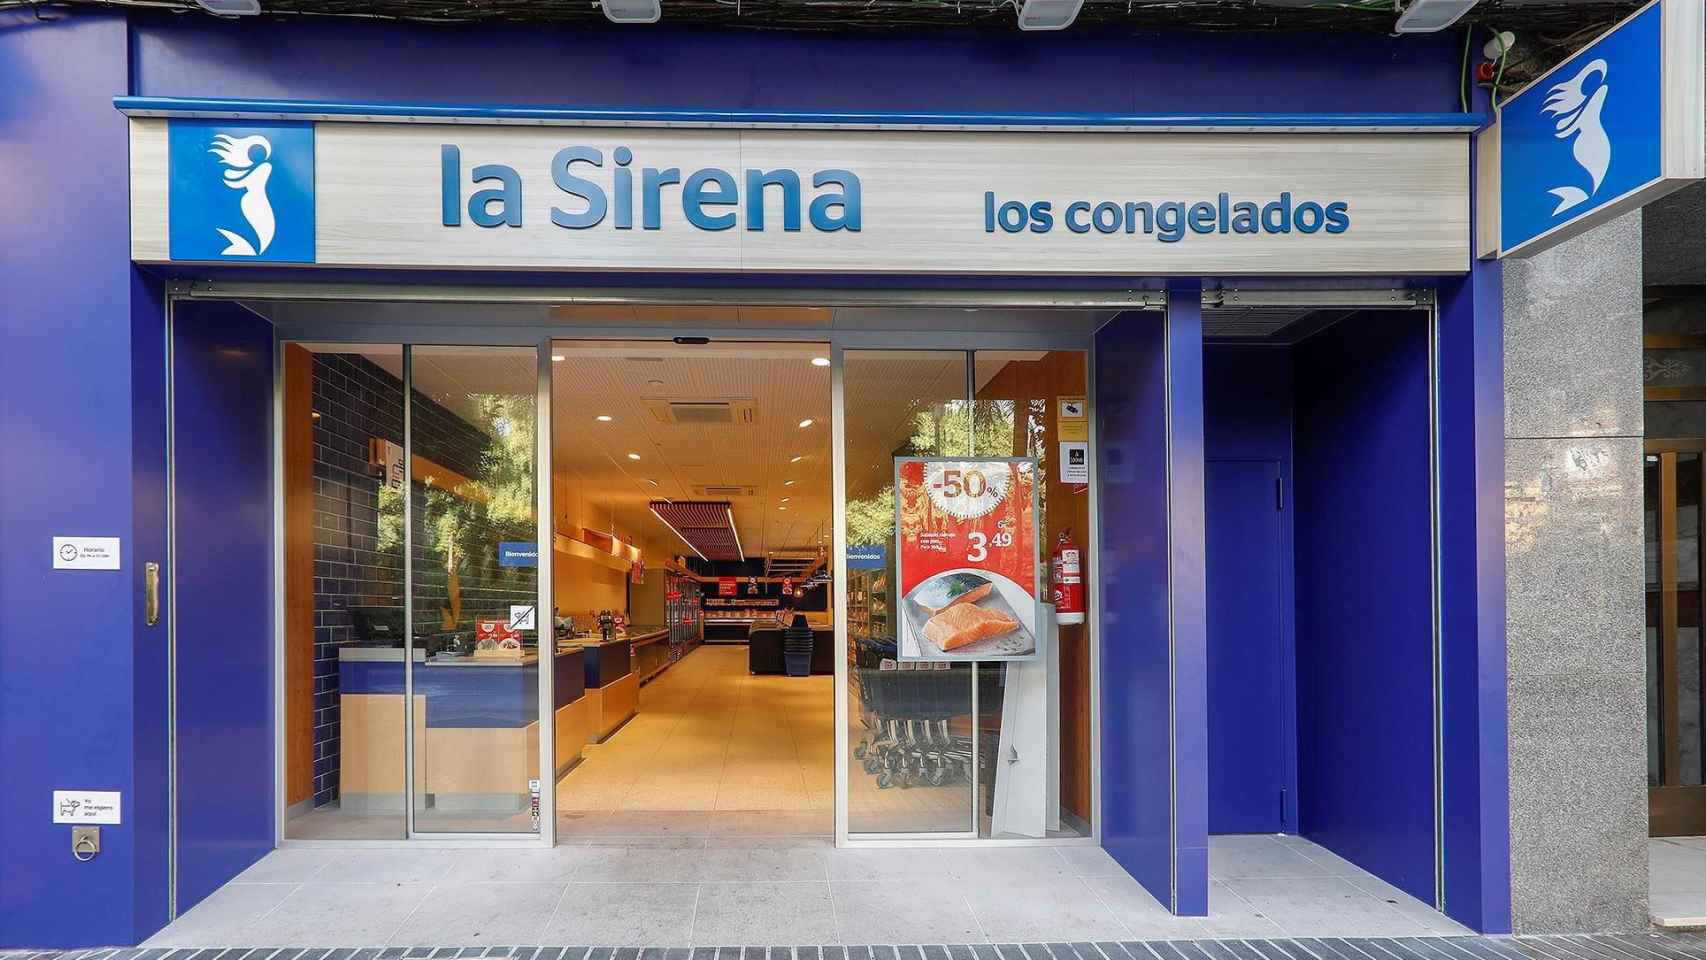 Una de las tiendas de congelados La Sirena / LA SIRENA